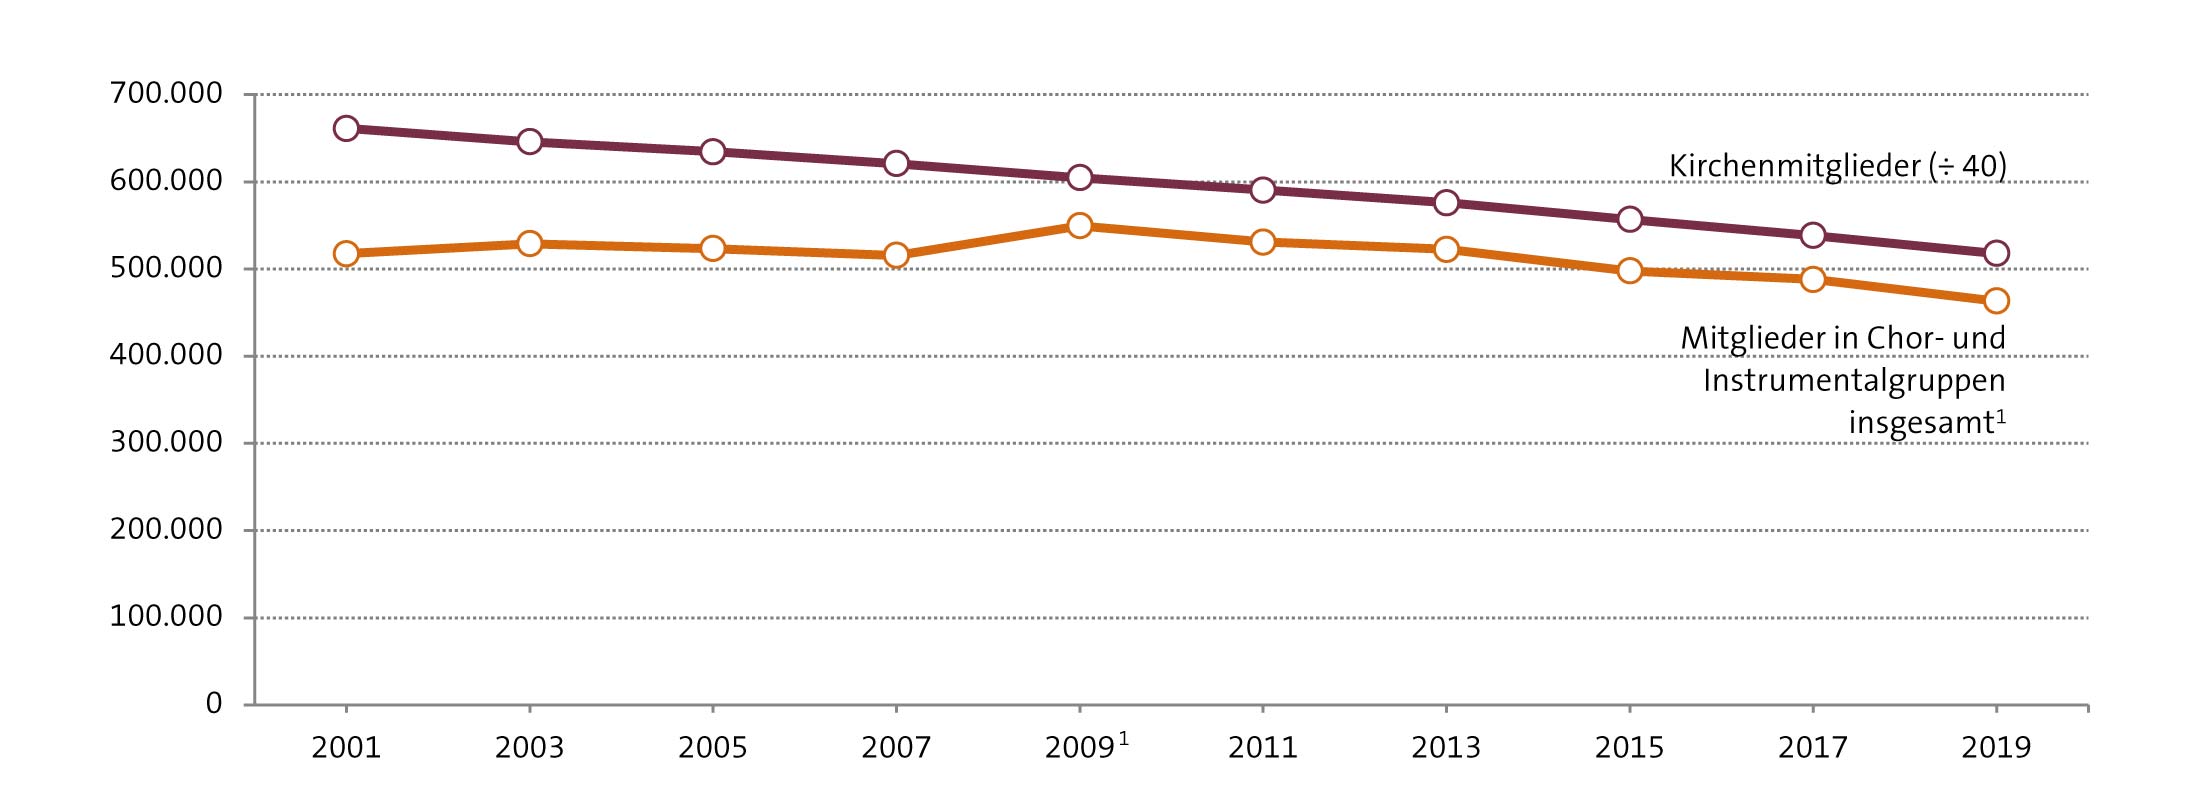 Abbildung: Entwicklung der Zahlen seit 2001